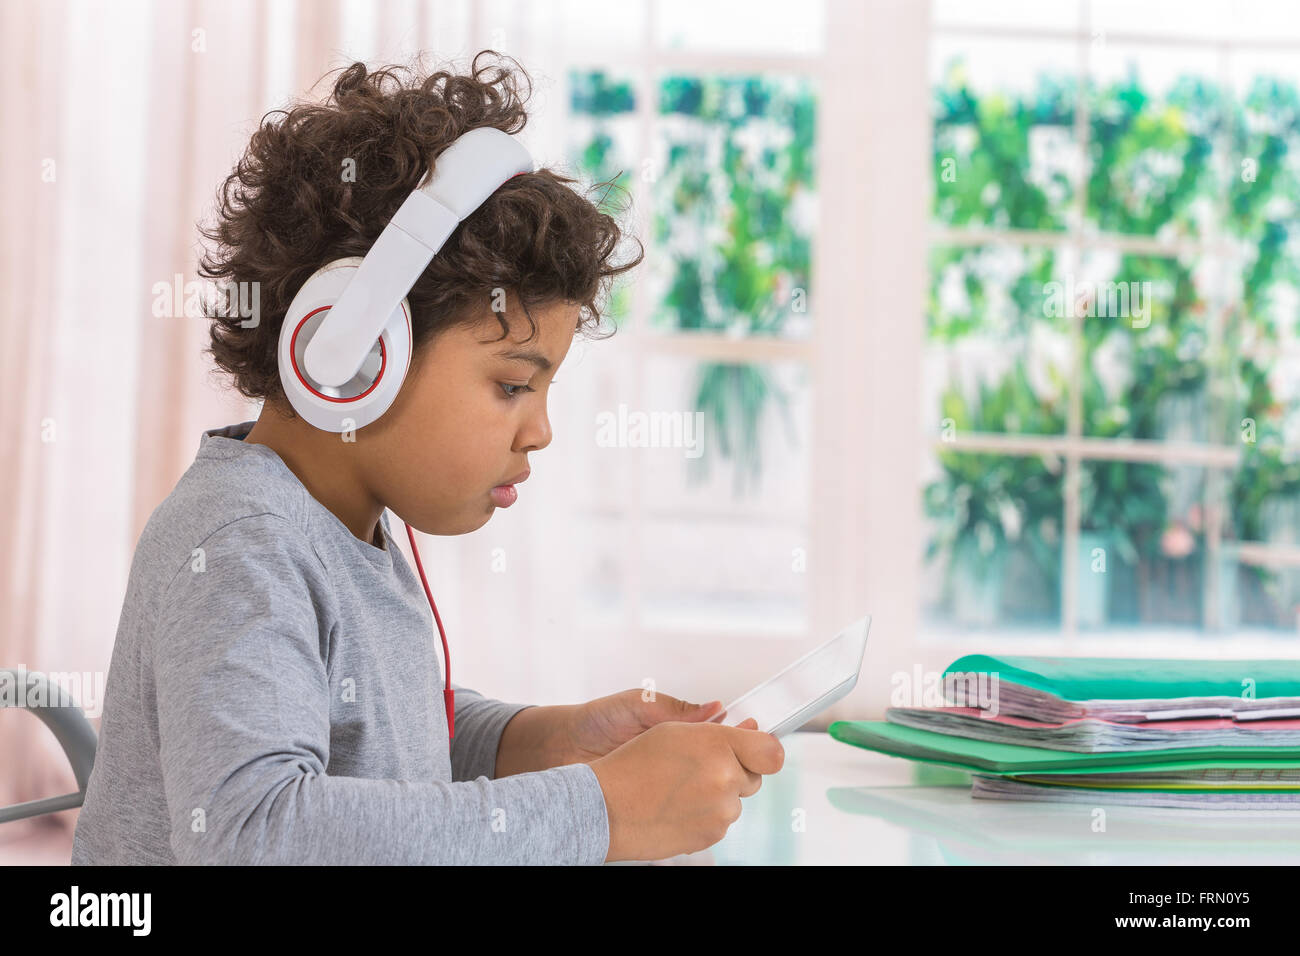 Cute teen boy écouter de la musique avec des écouteurs et tablette Banque D'Images